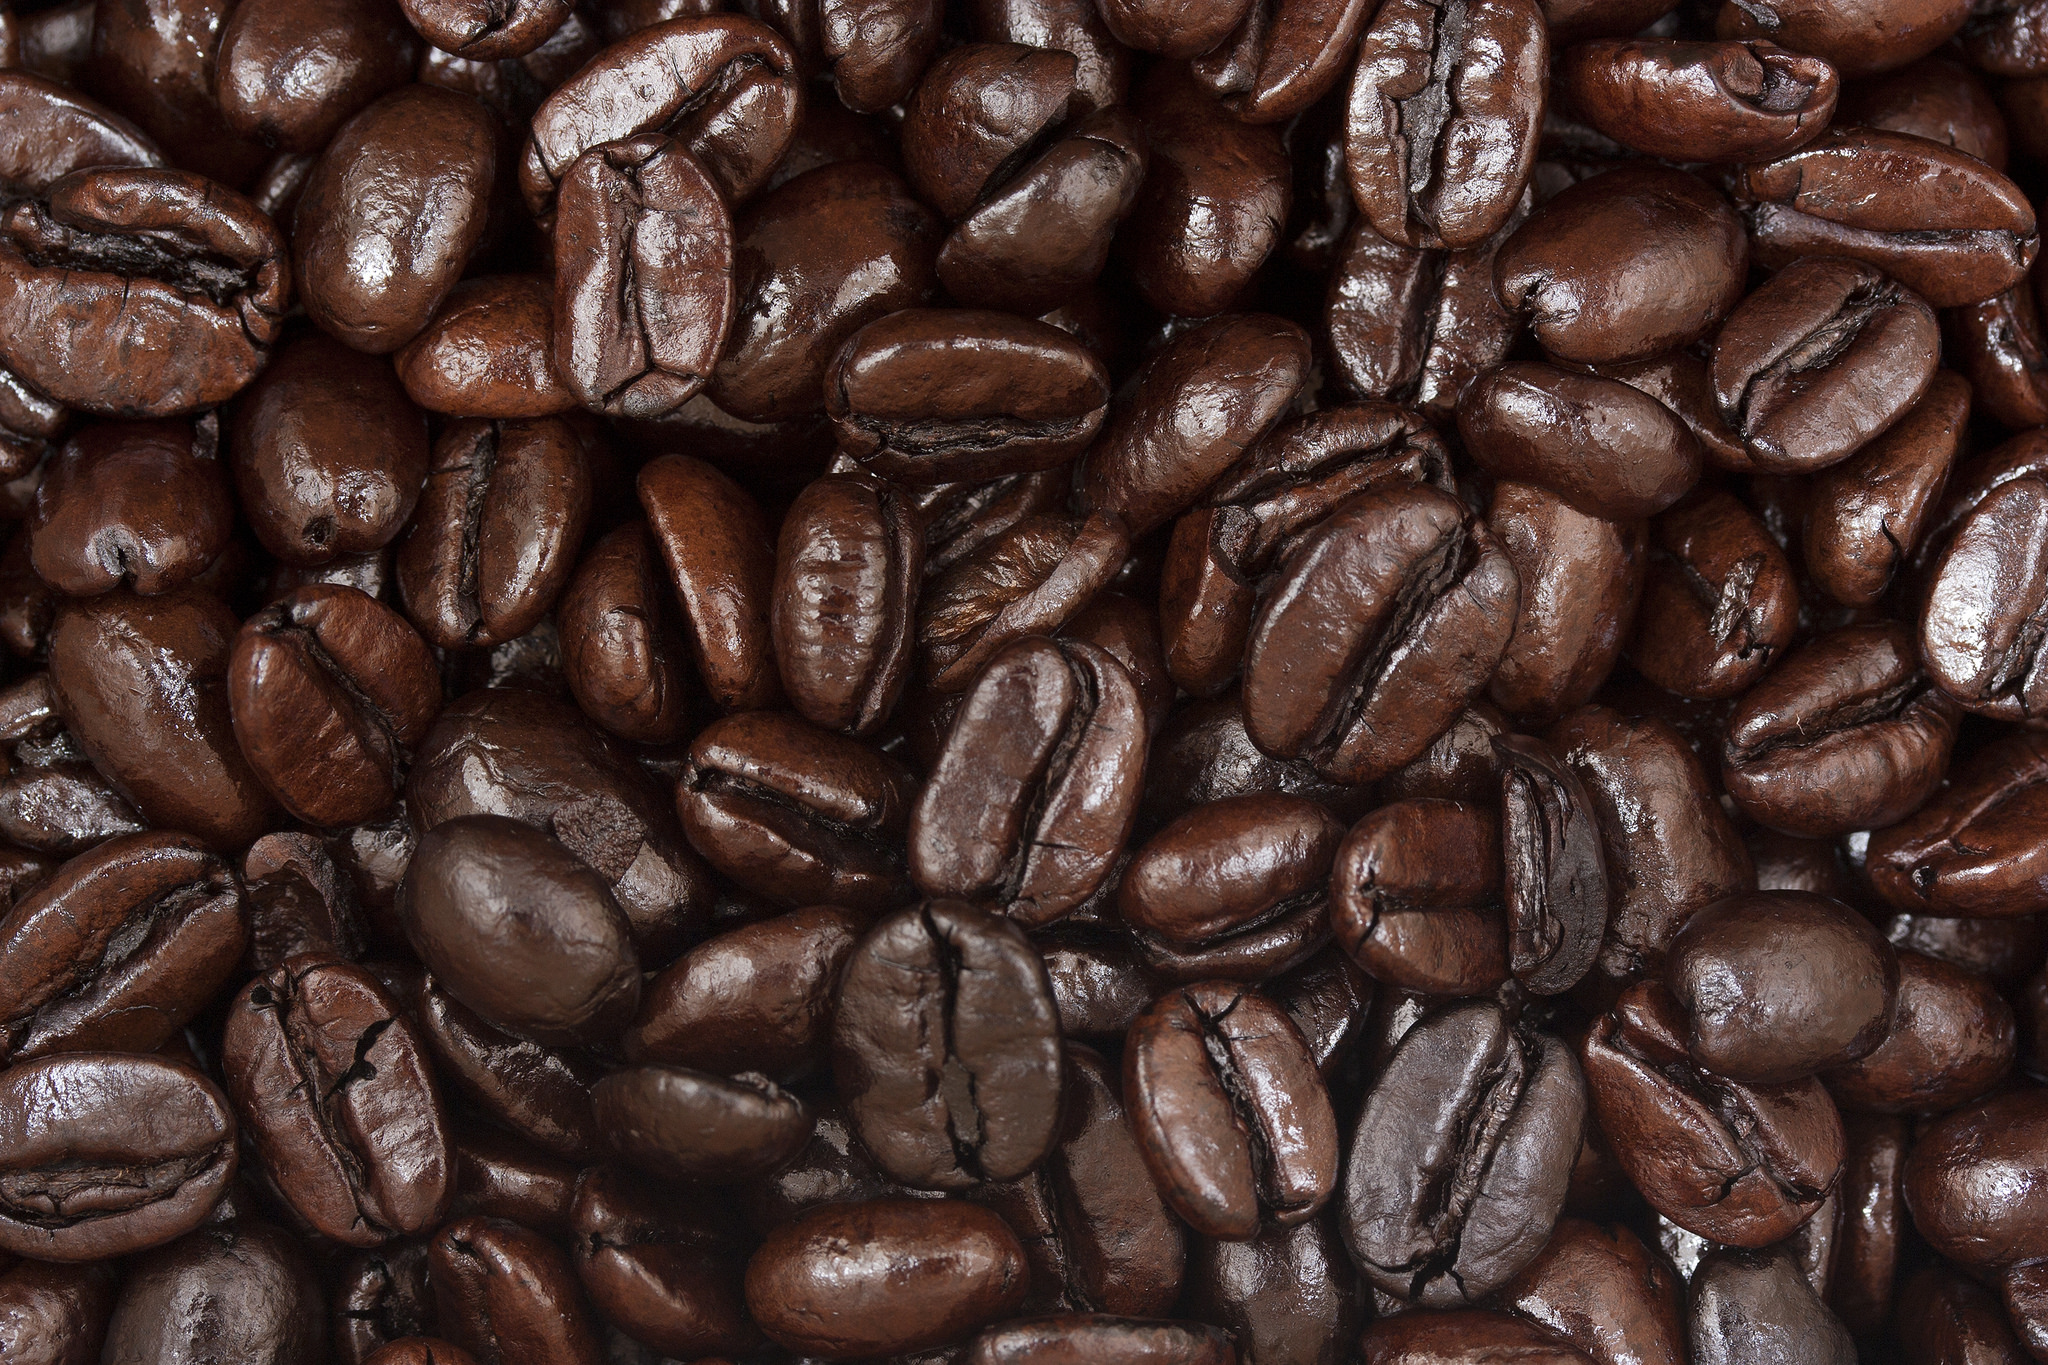 Peet’s Coffee & Tea Scoops Up Stumptown Roasters